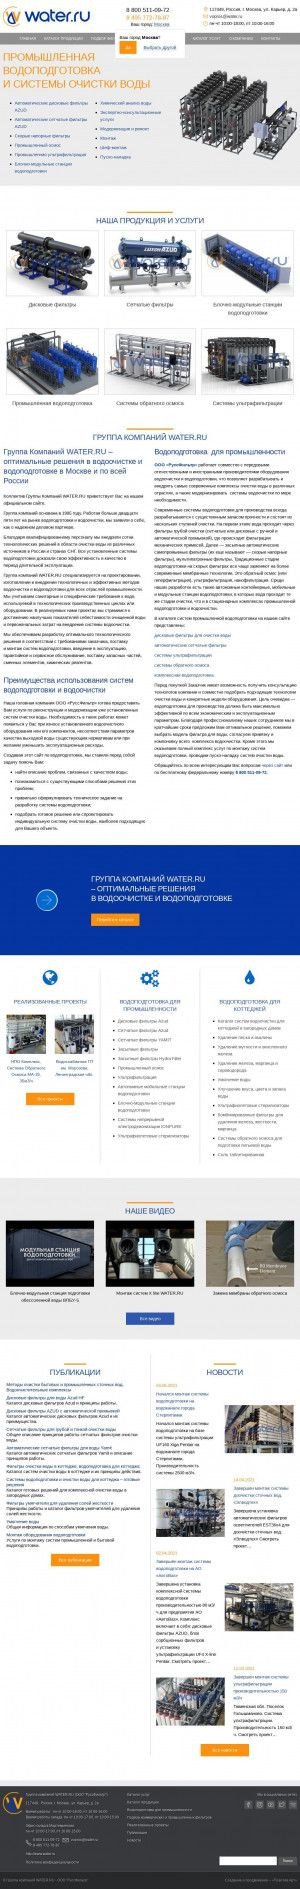 Предпросмотр для www.water.ru — Группа компаний Water.ru